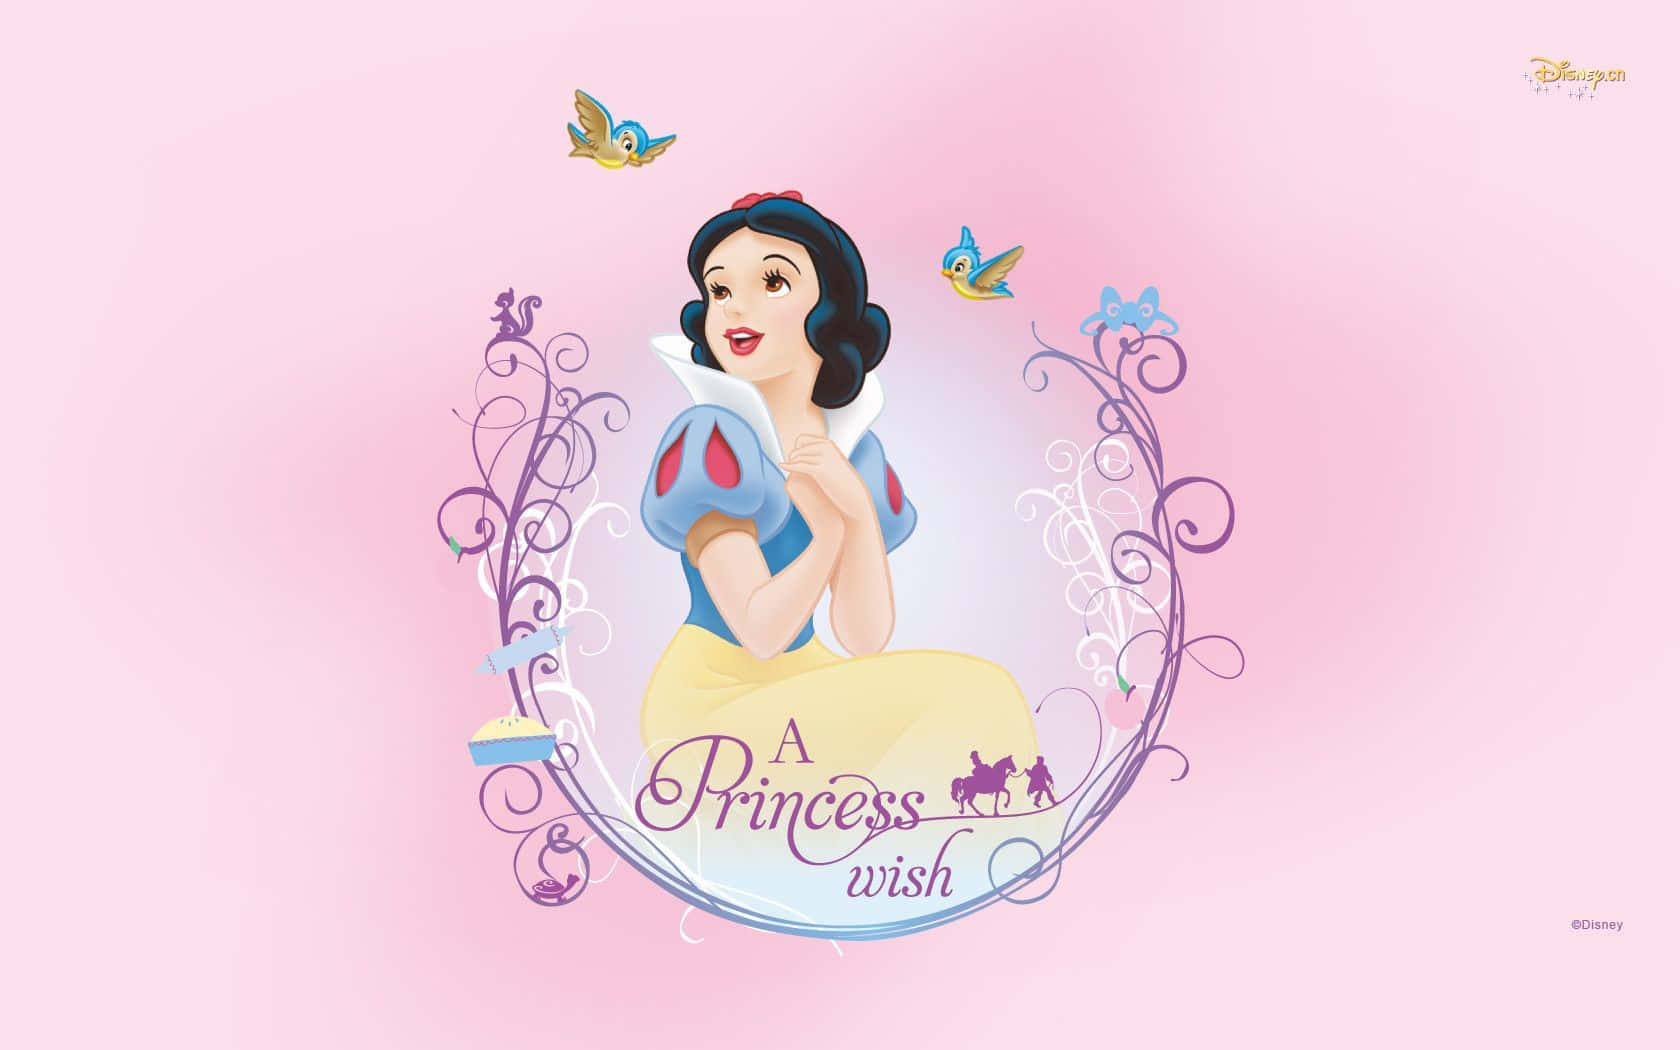 Fairytale Beauty - Snow White